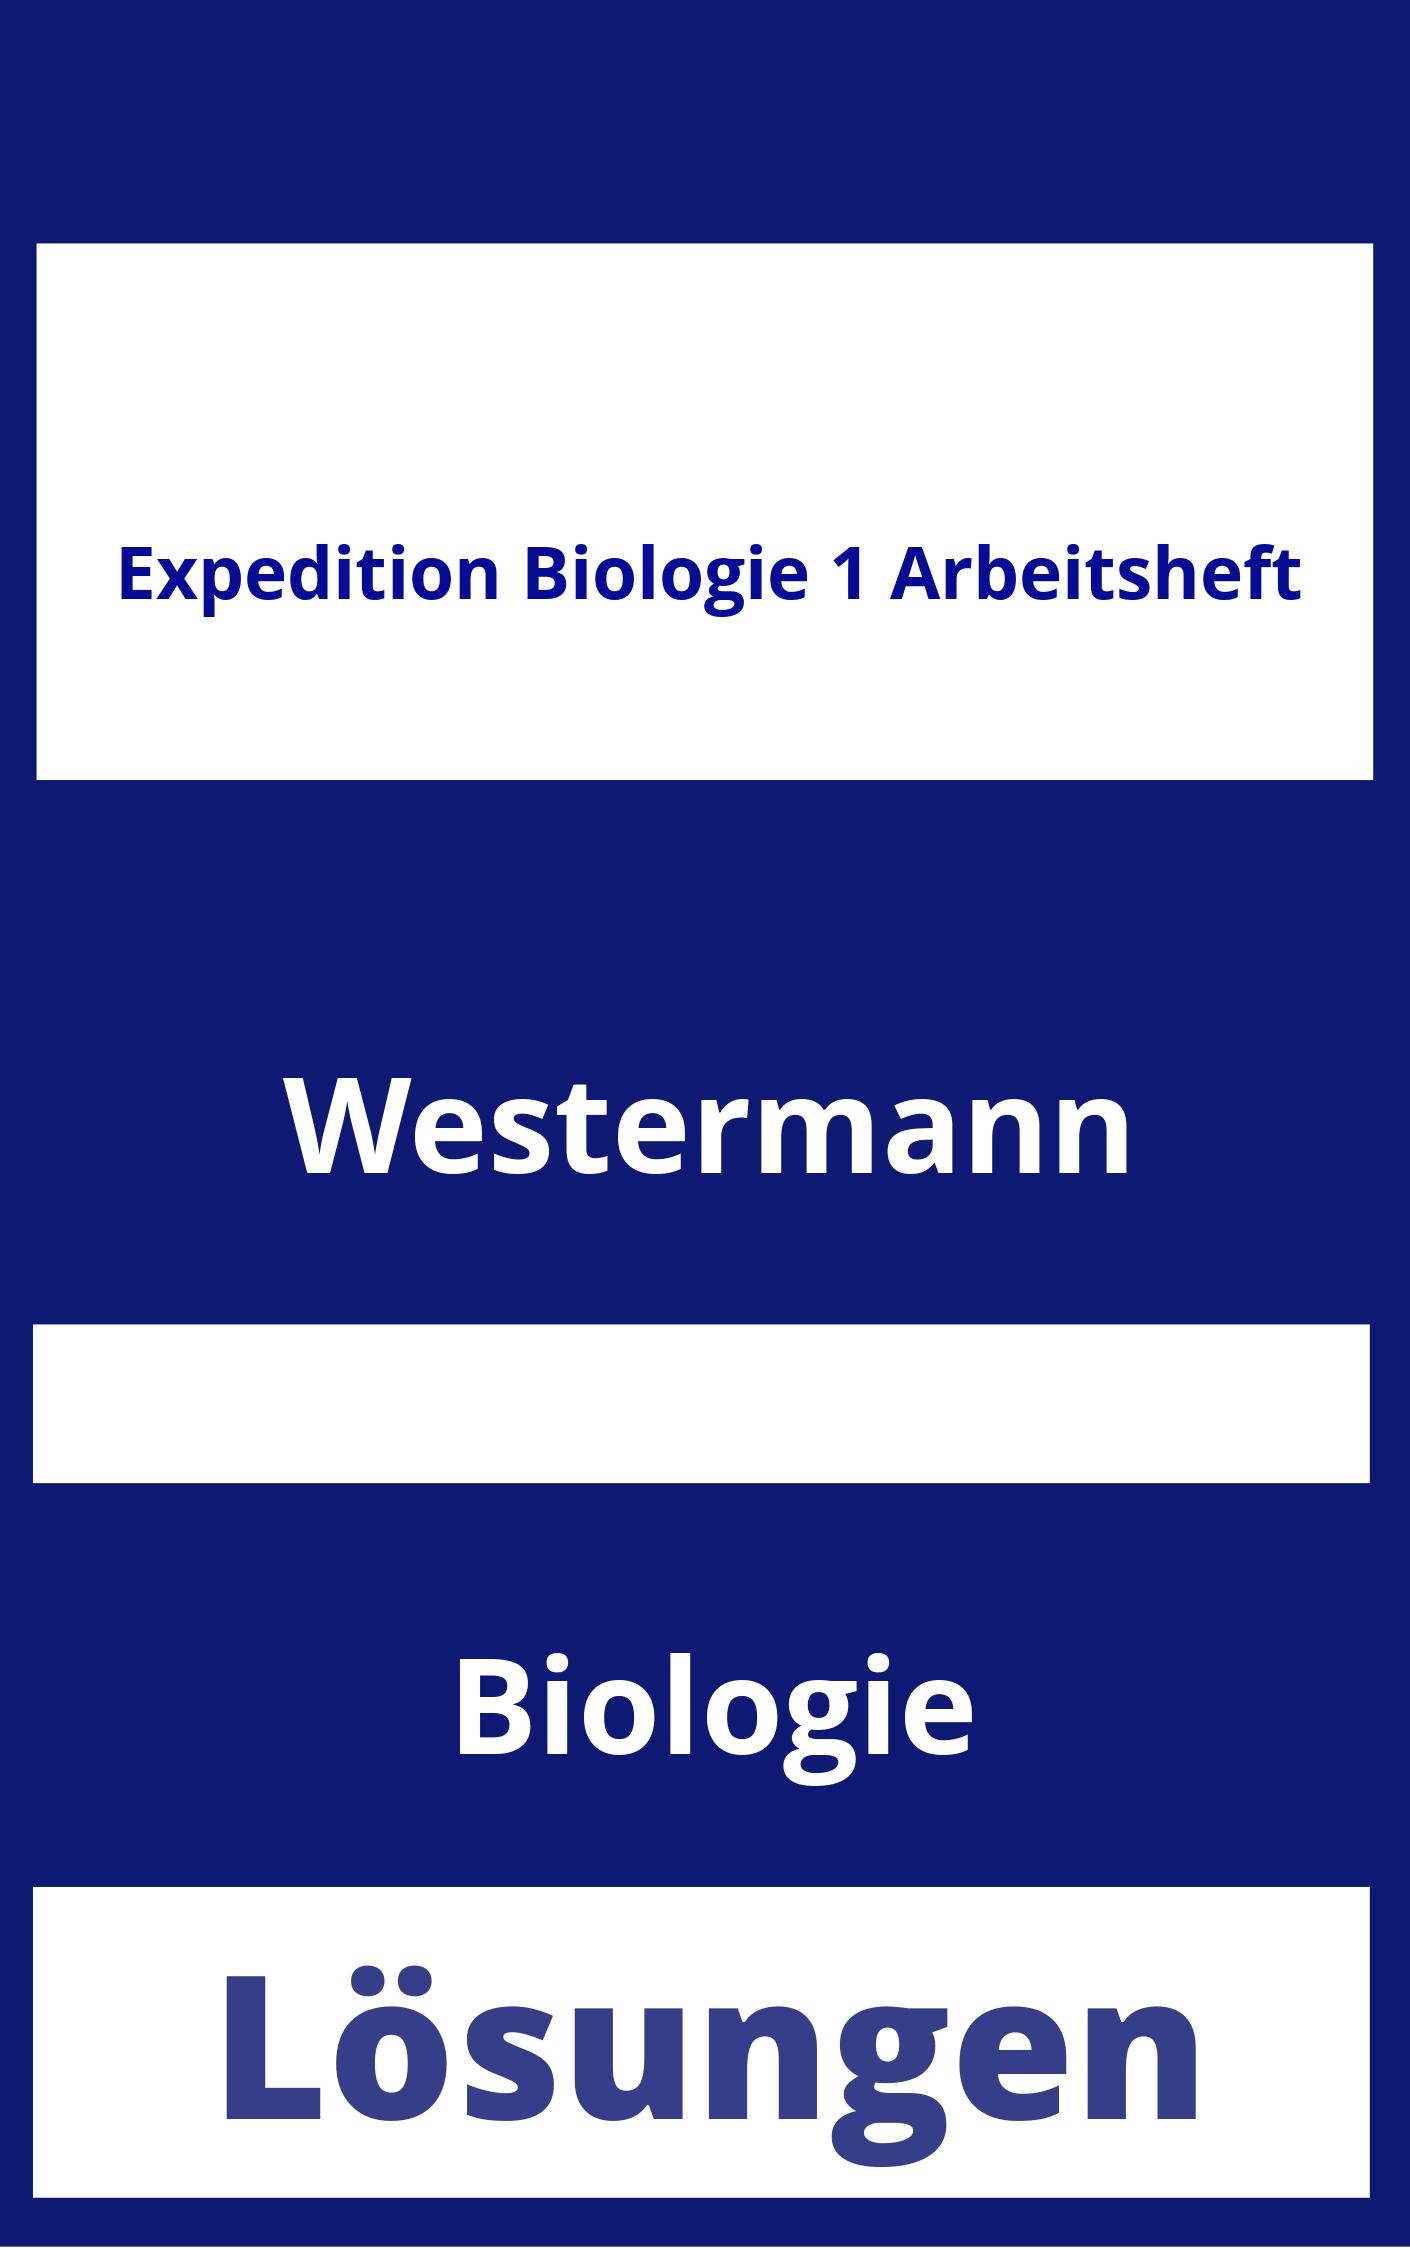 Expedition Biologie 1 Arbeitsheft